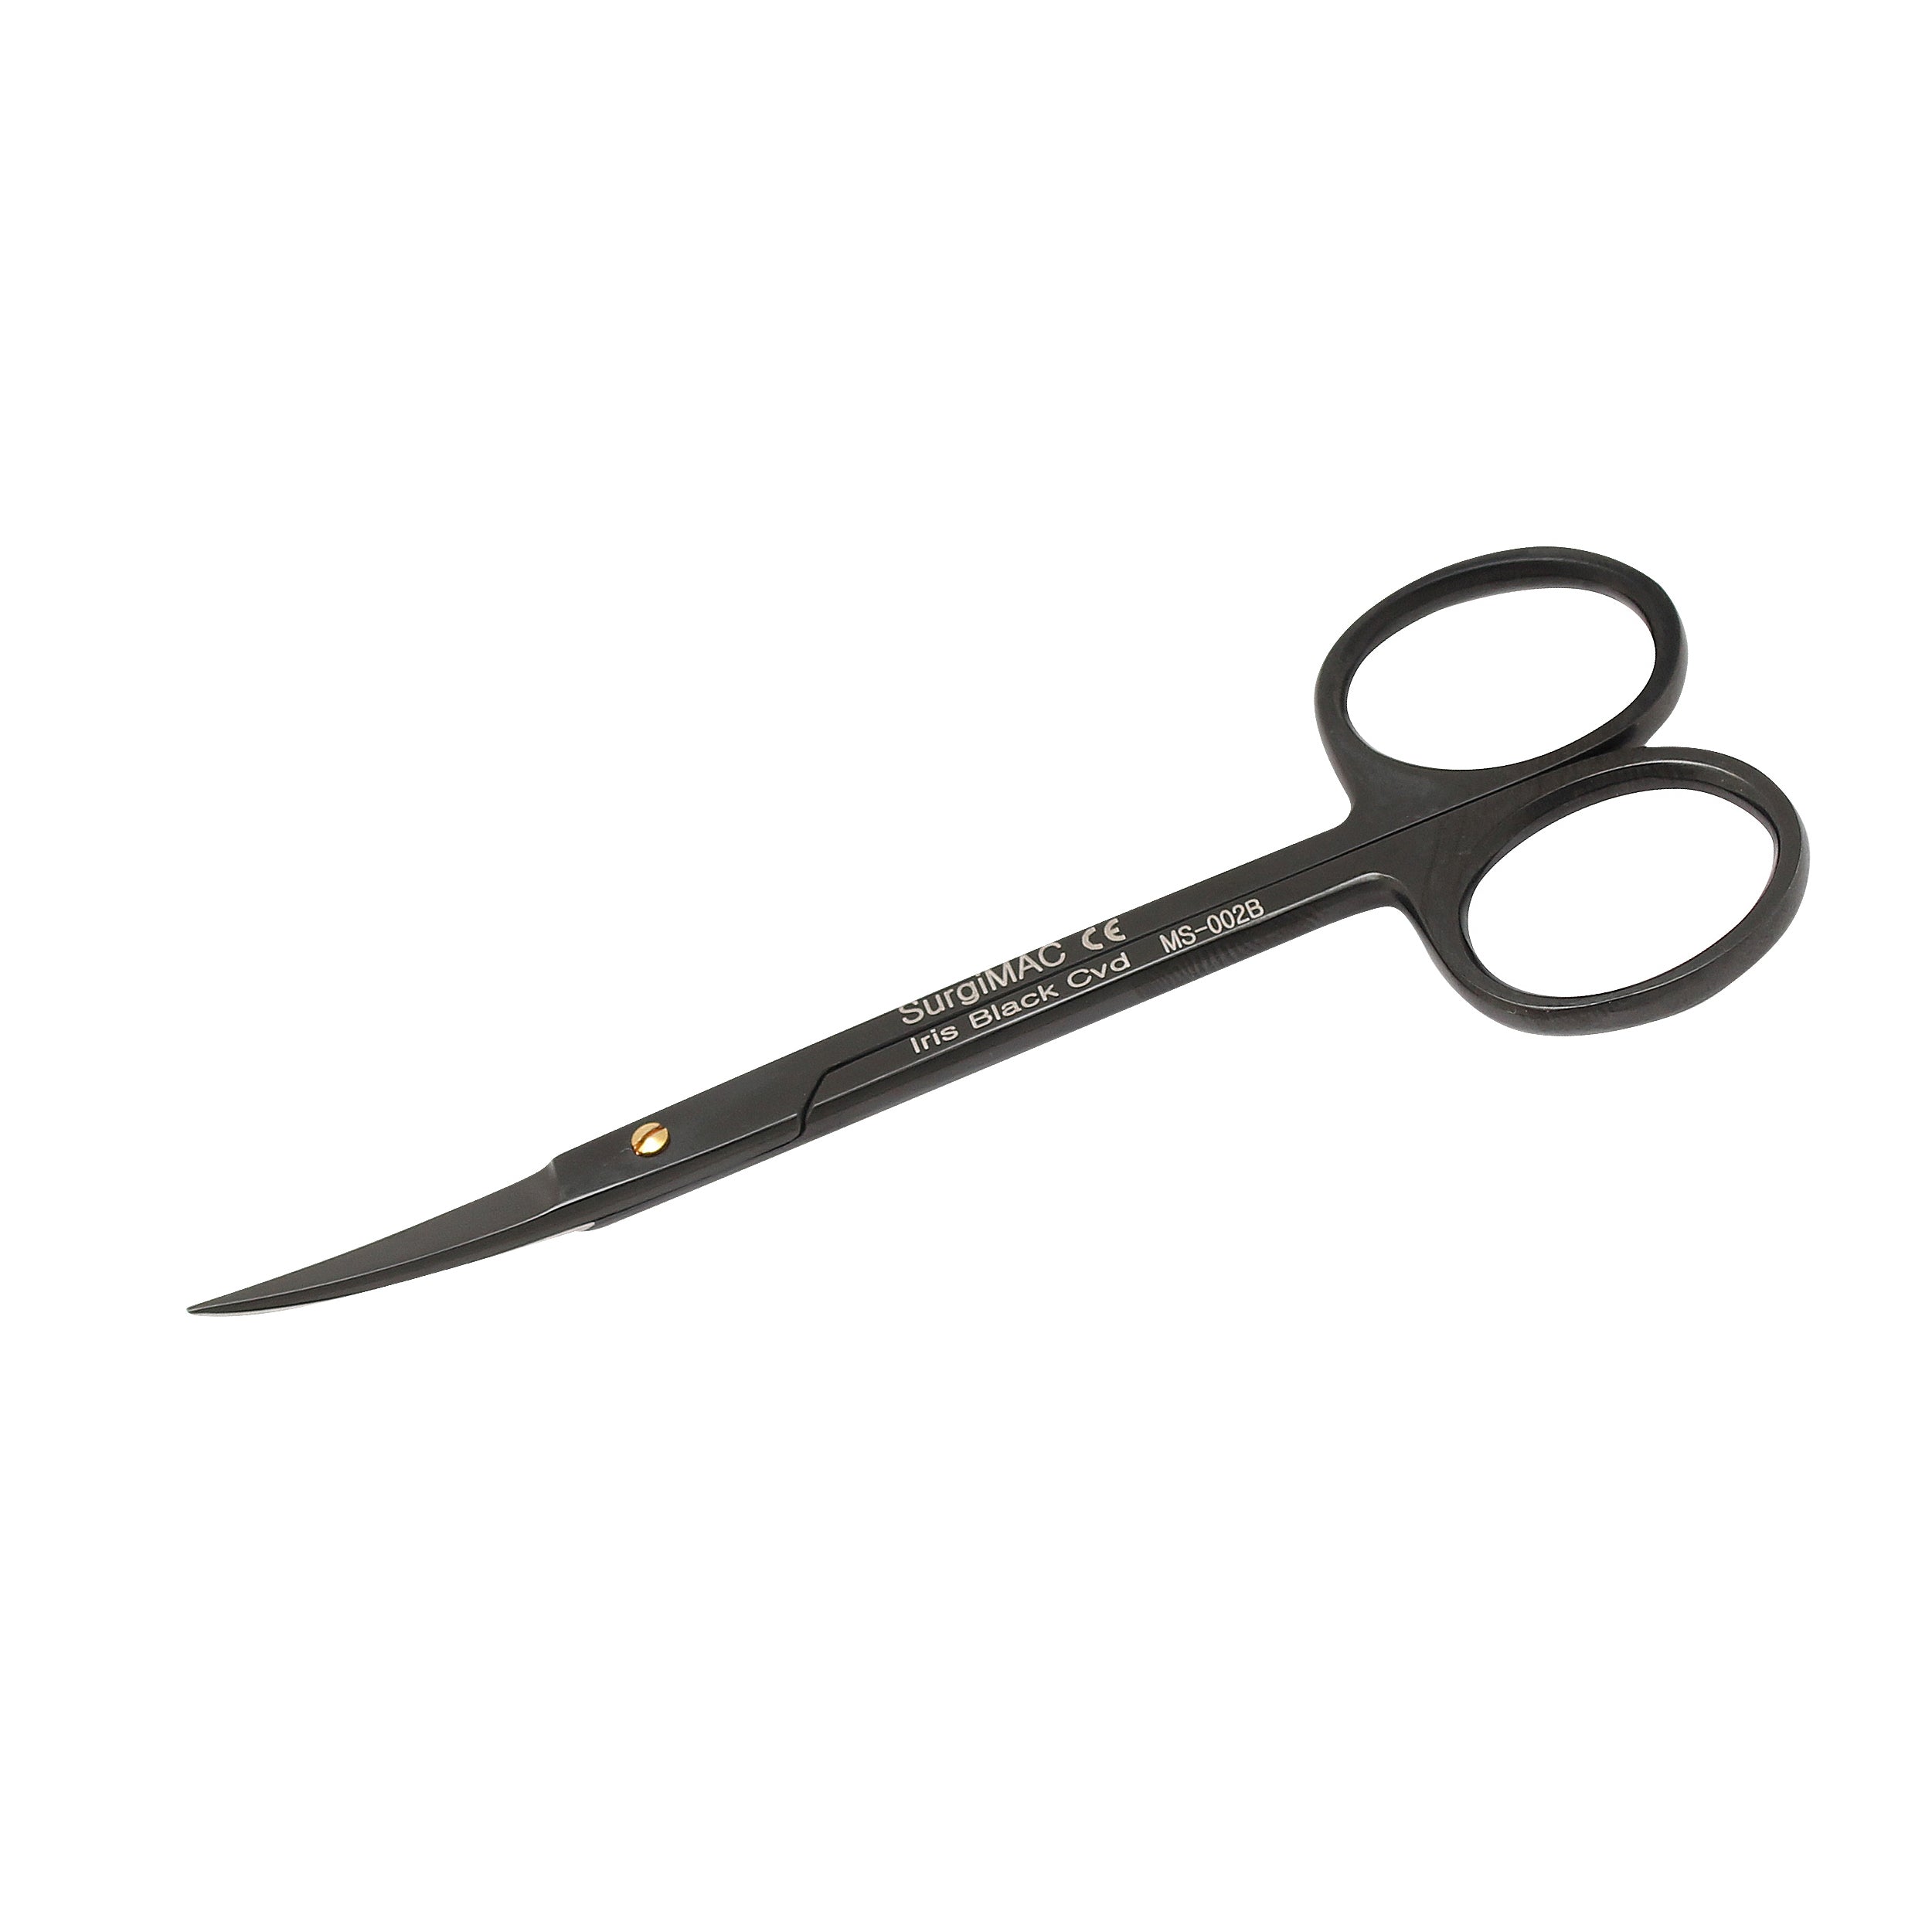 Iris Scissors 4.5 Straight Sharp Sharp Points SurgicalExcel